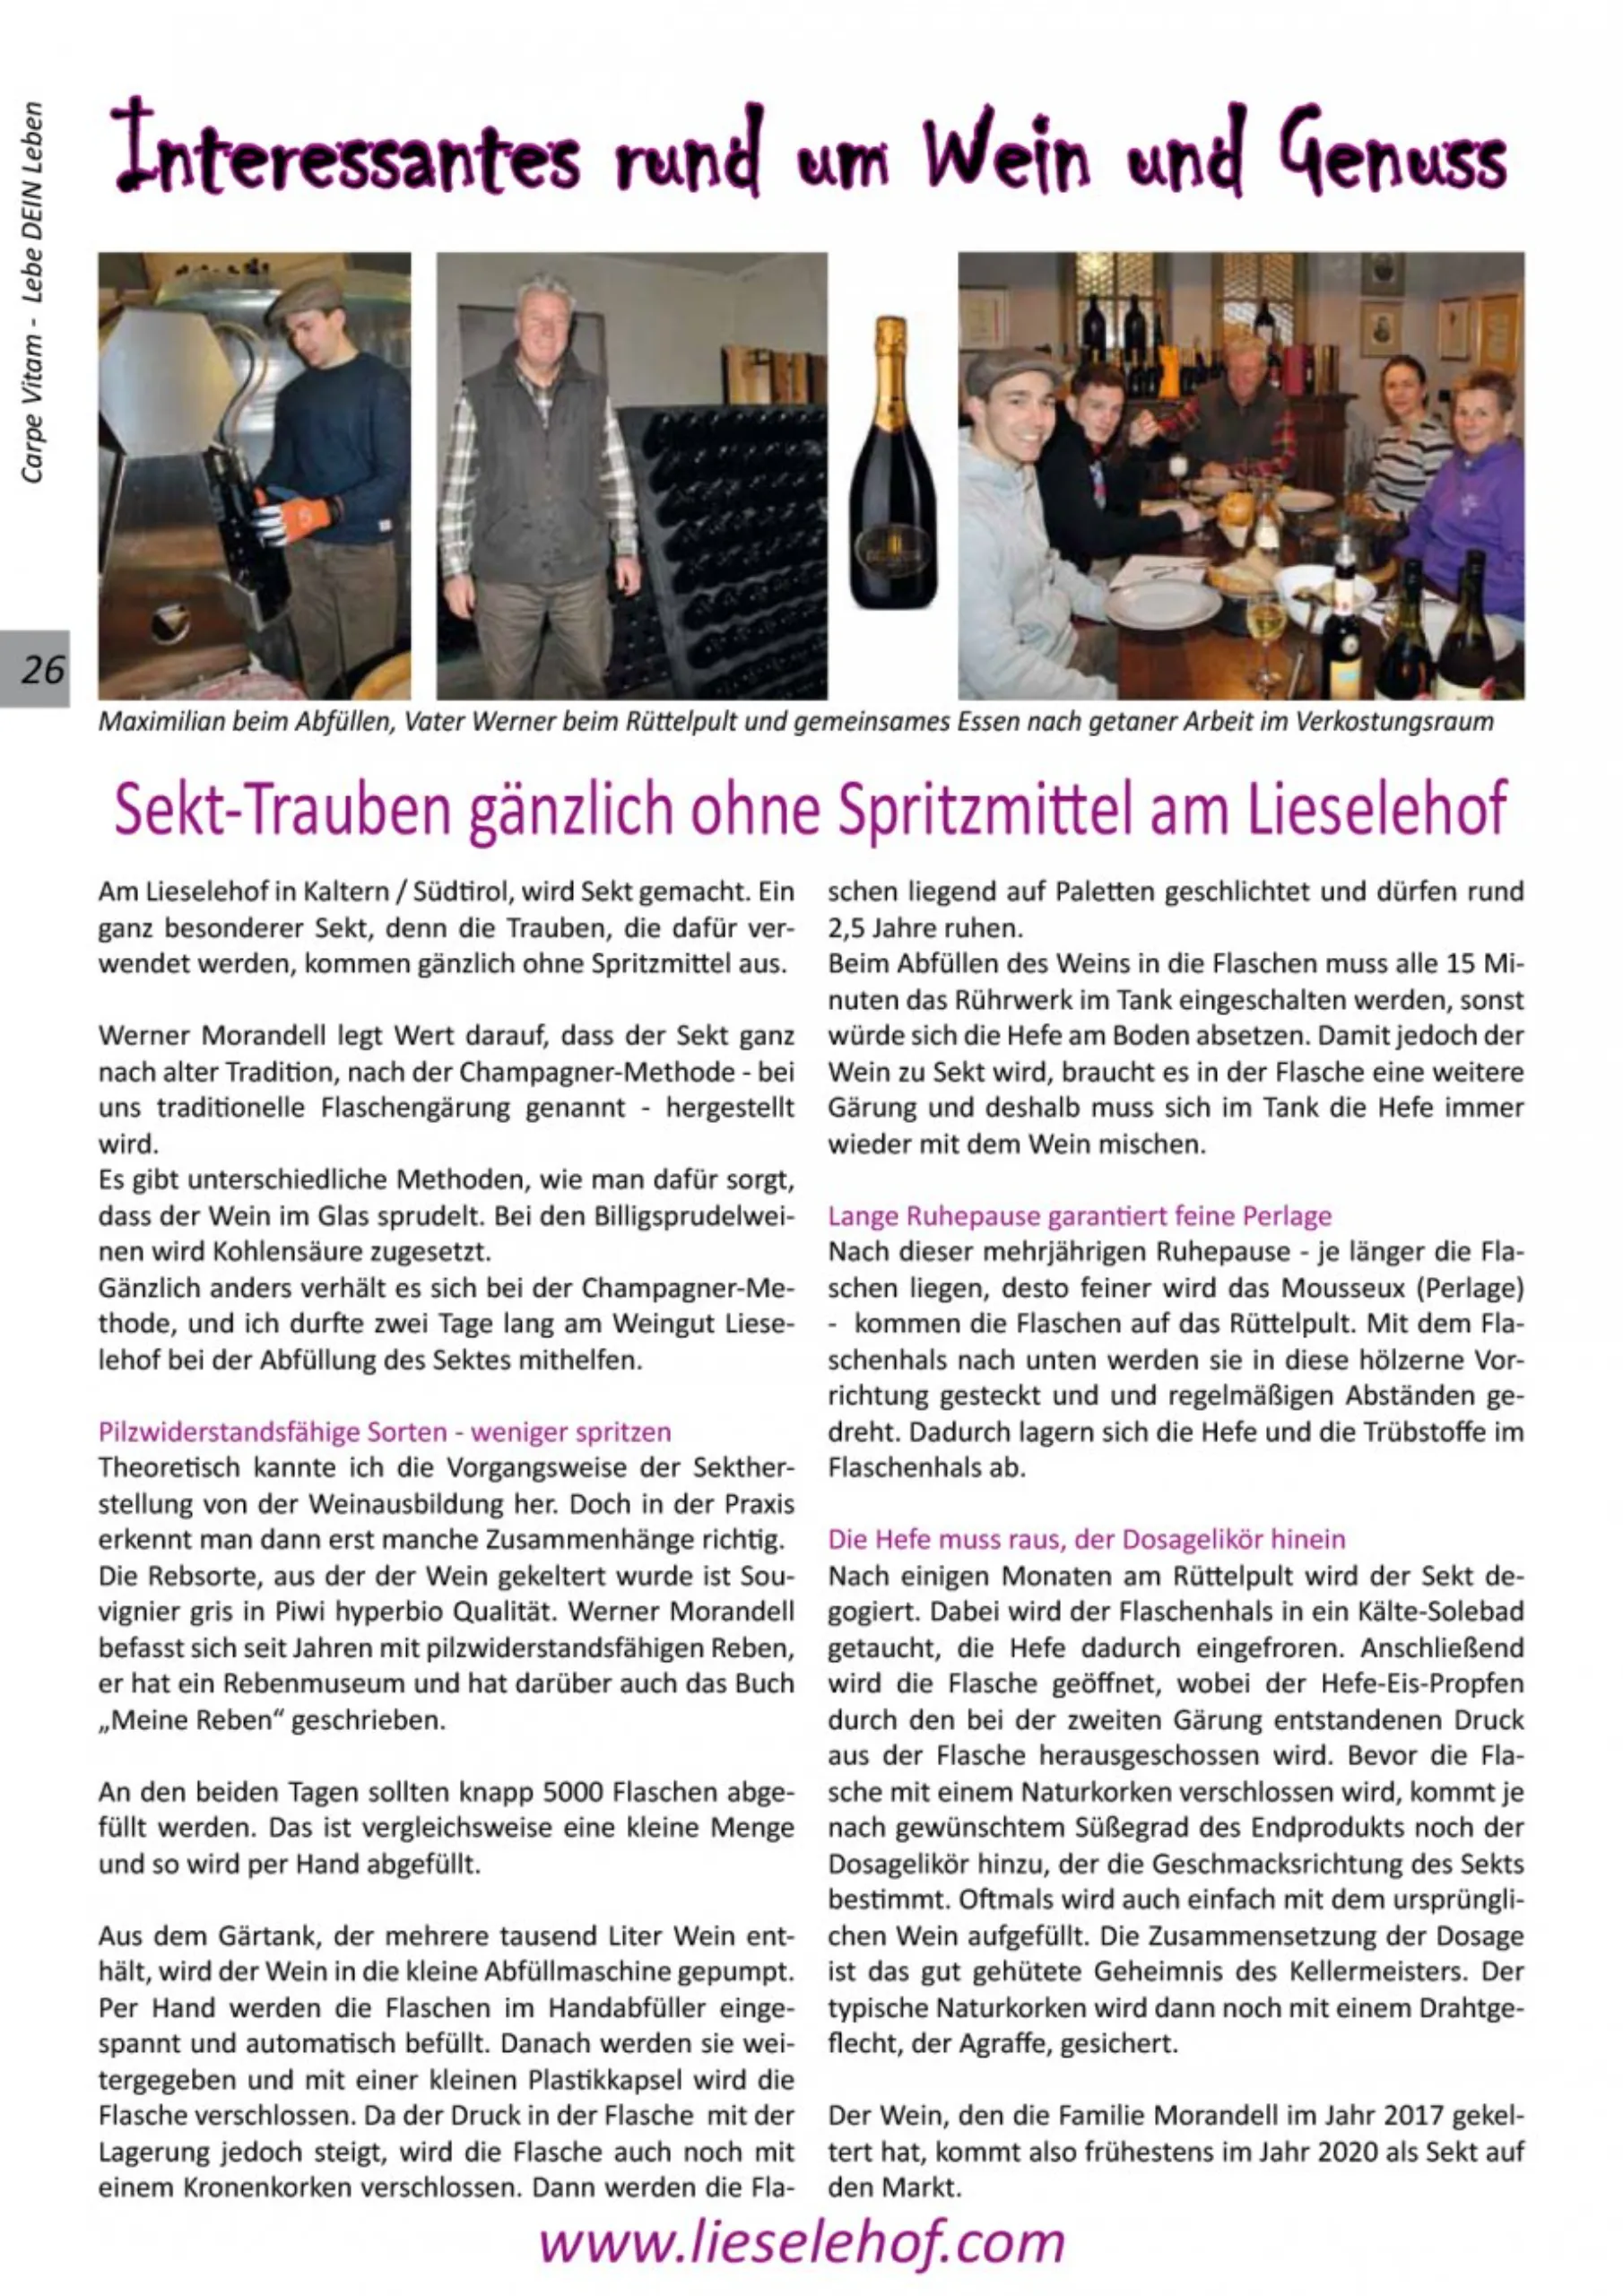 lieselehof-press-article-2